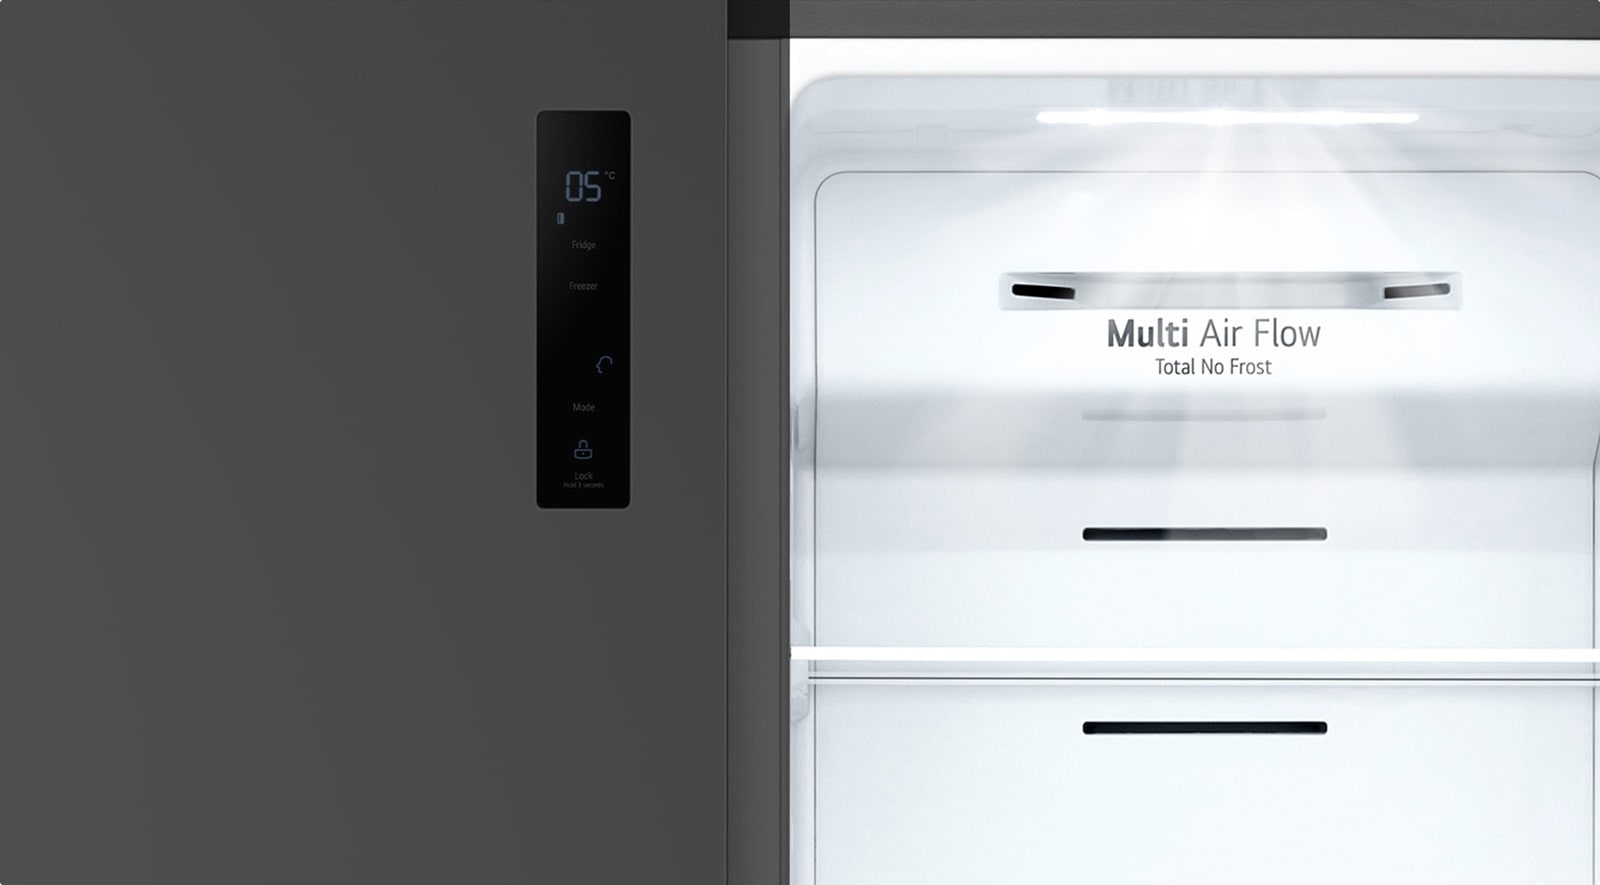 Đèn màu trắng đang chiếu bên trong tủ lạnh.